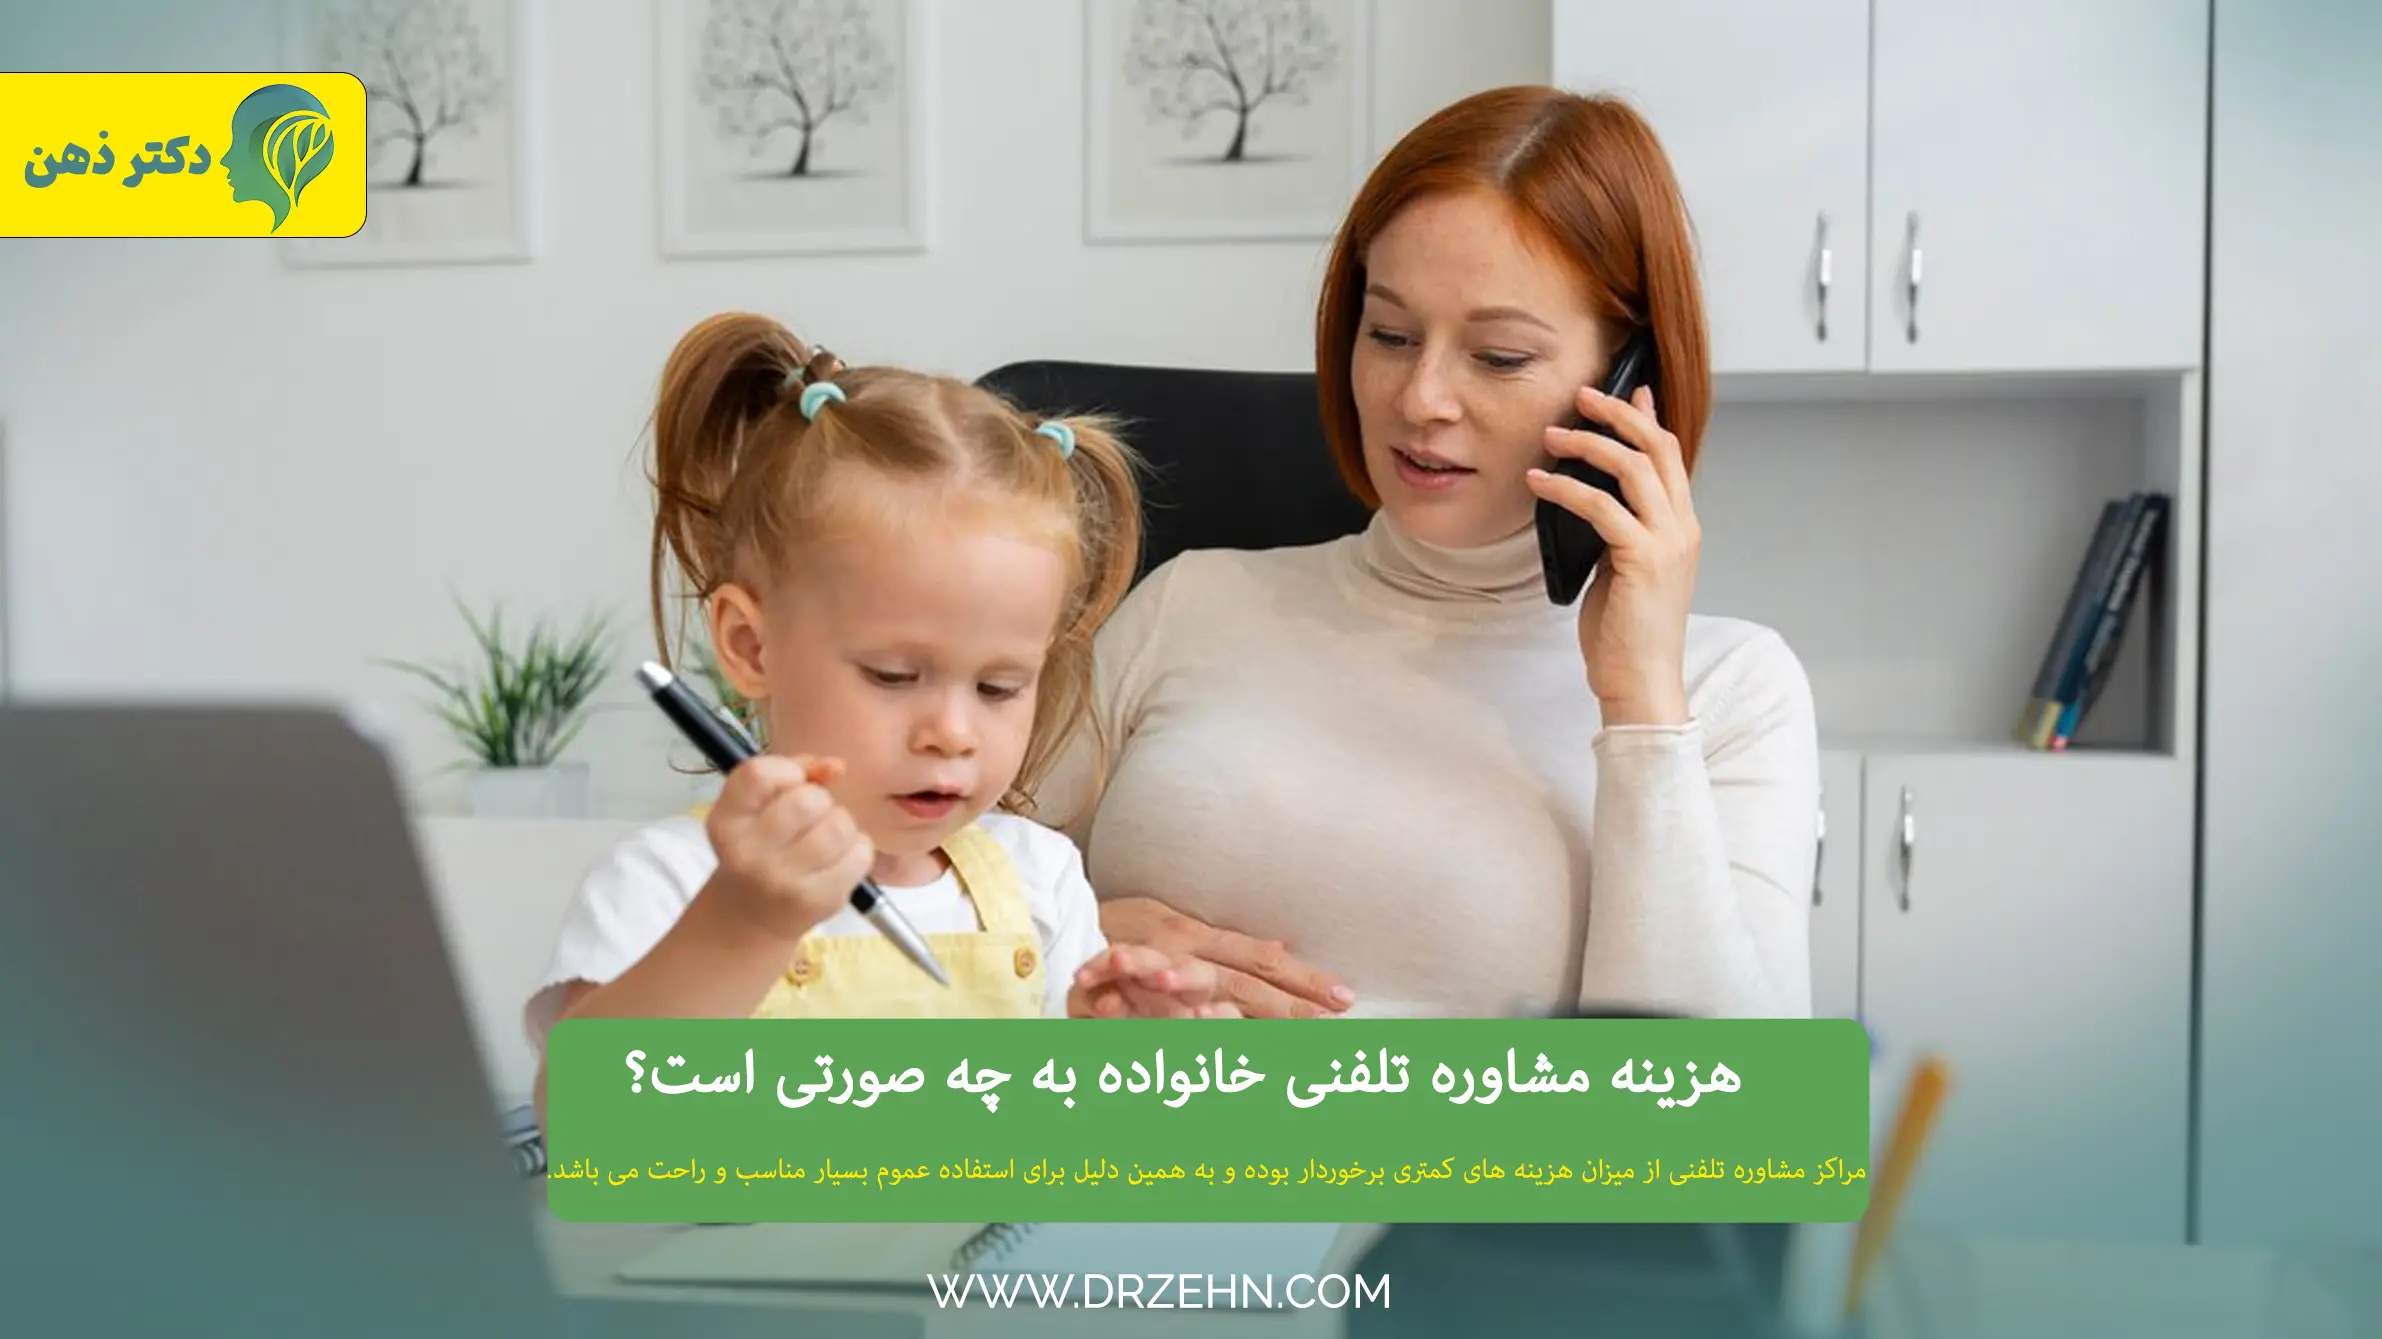 هزینه مشاوره تلفنی خانواده 